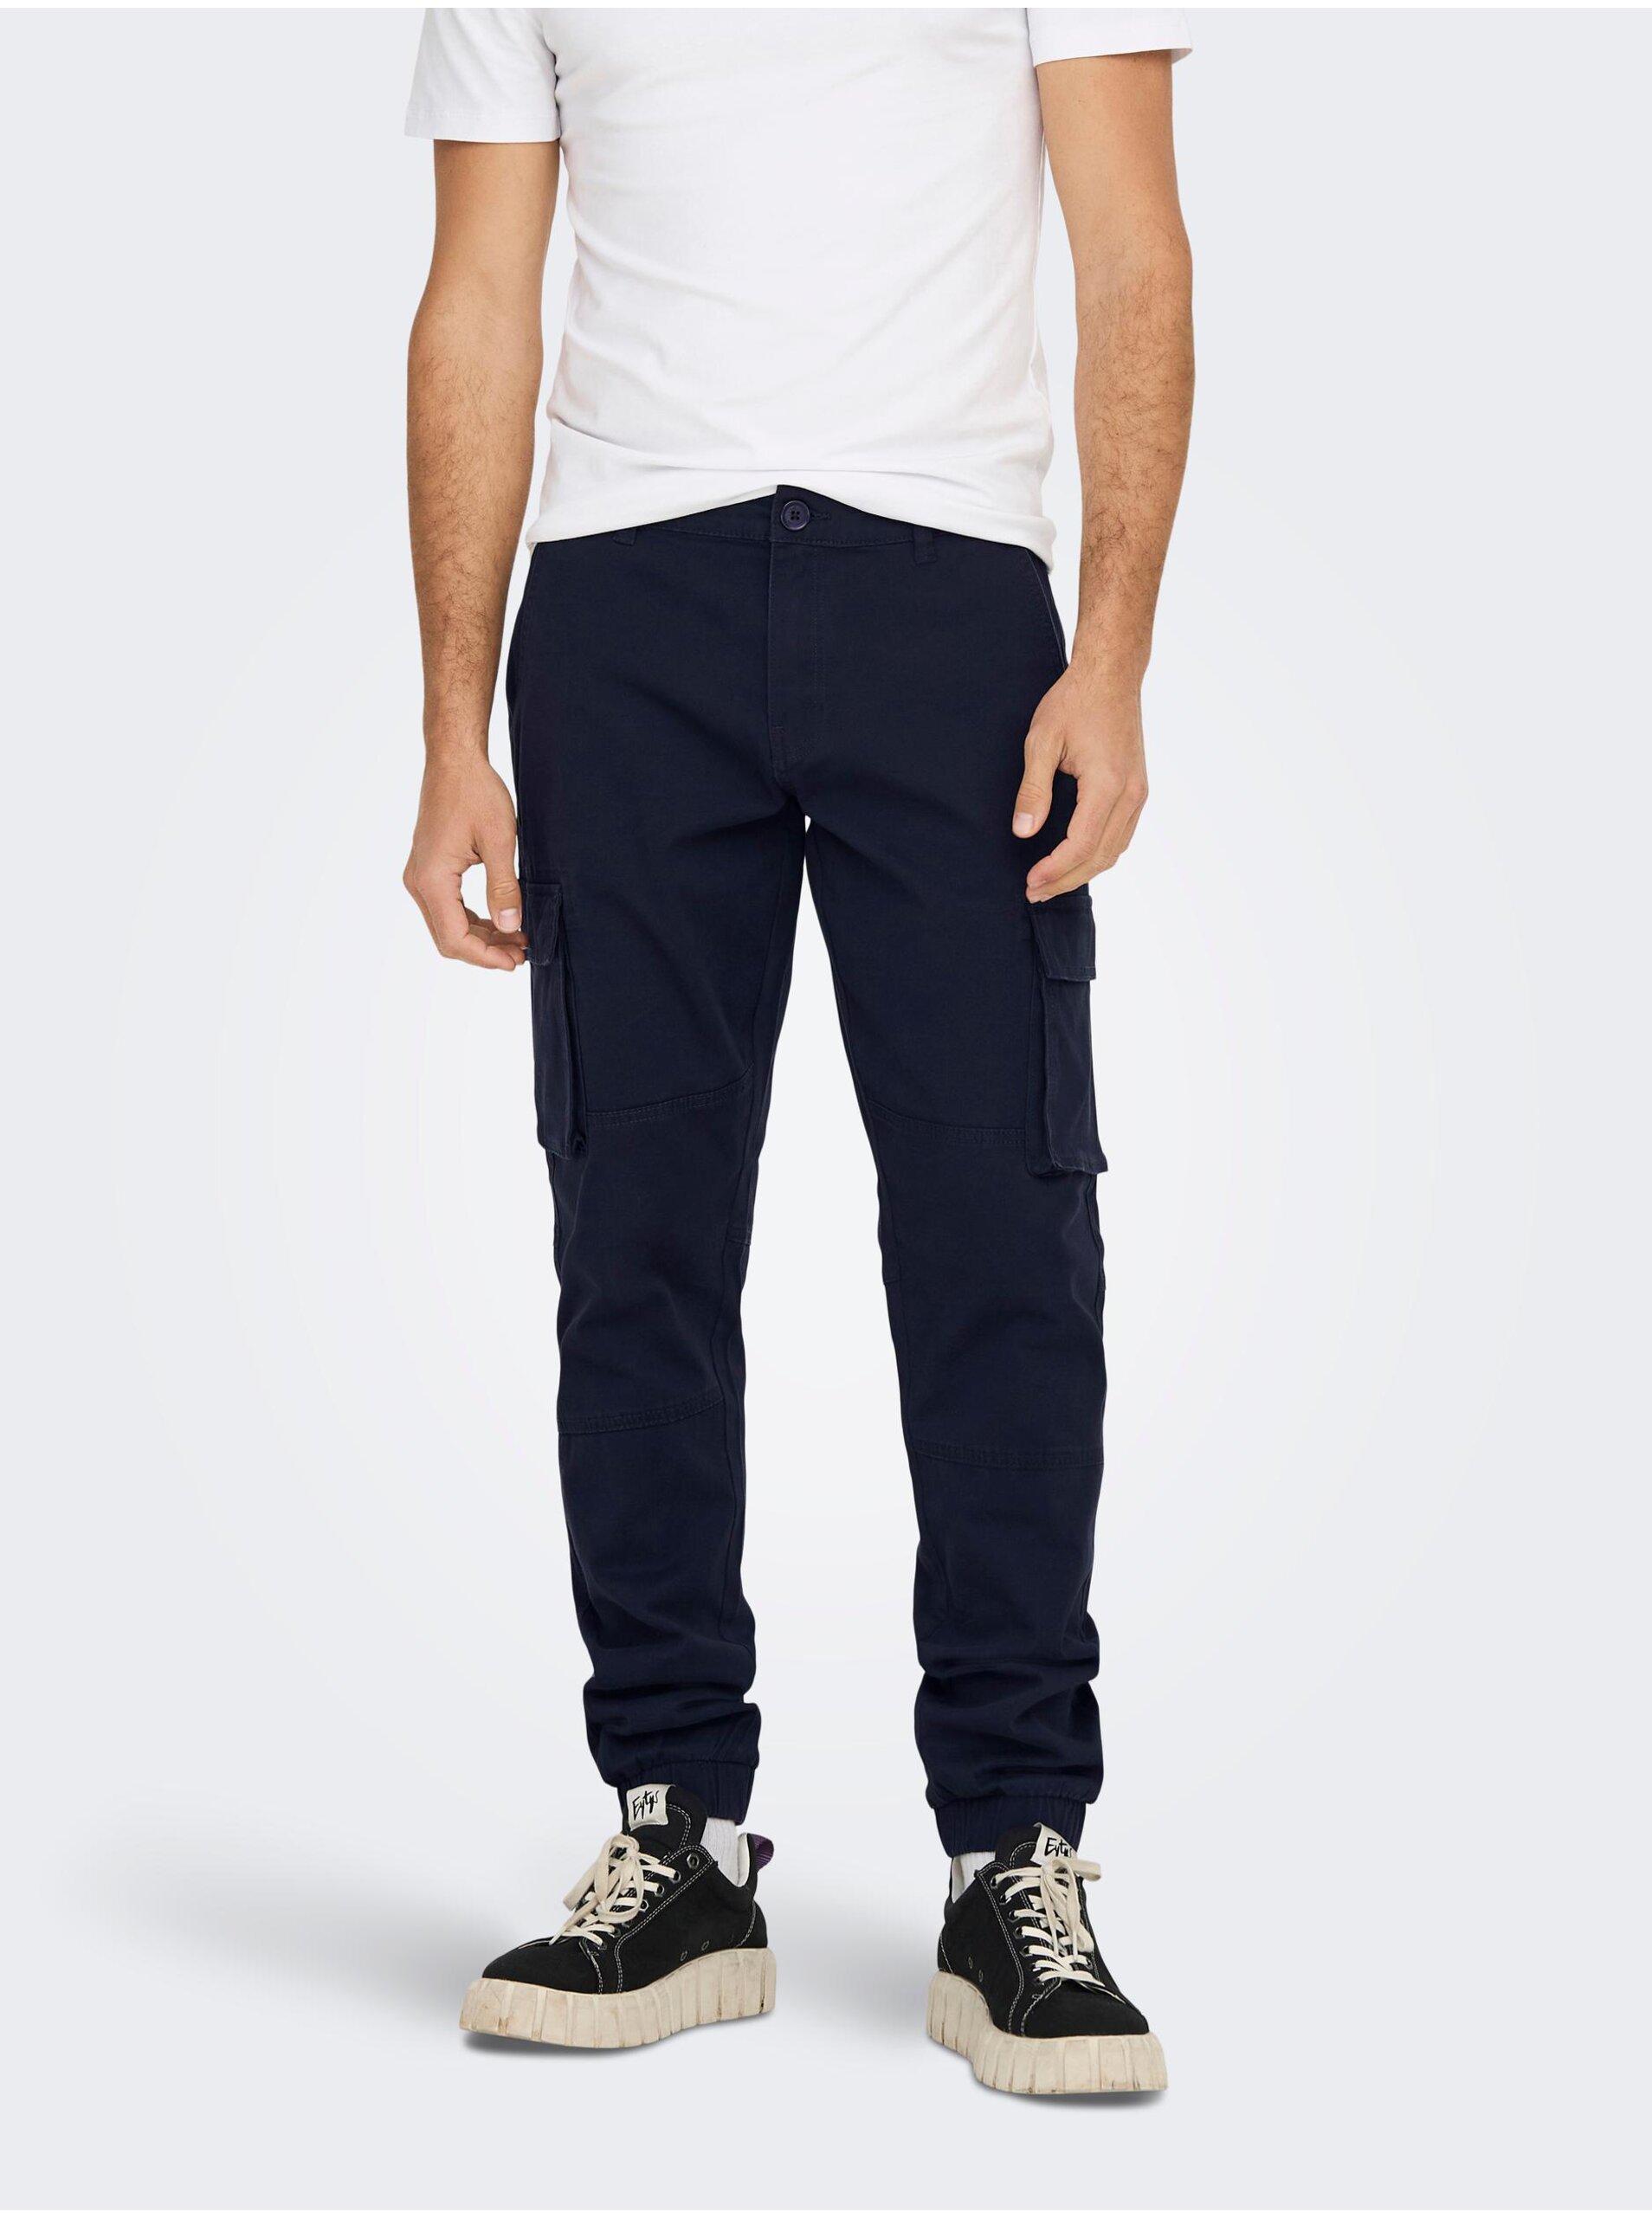 E-shop Tmavě modré kalhoty s kapsami ONLY & SONS Cam